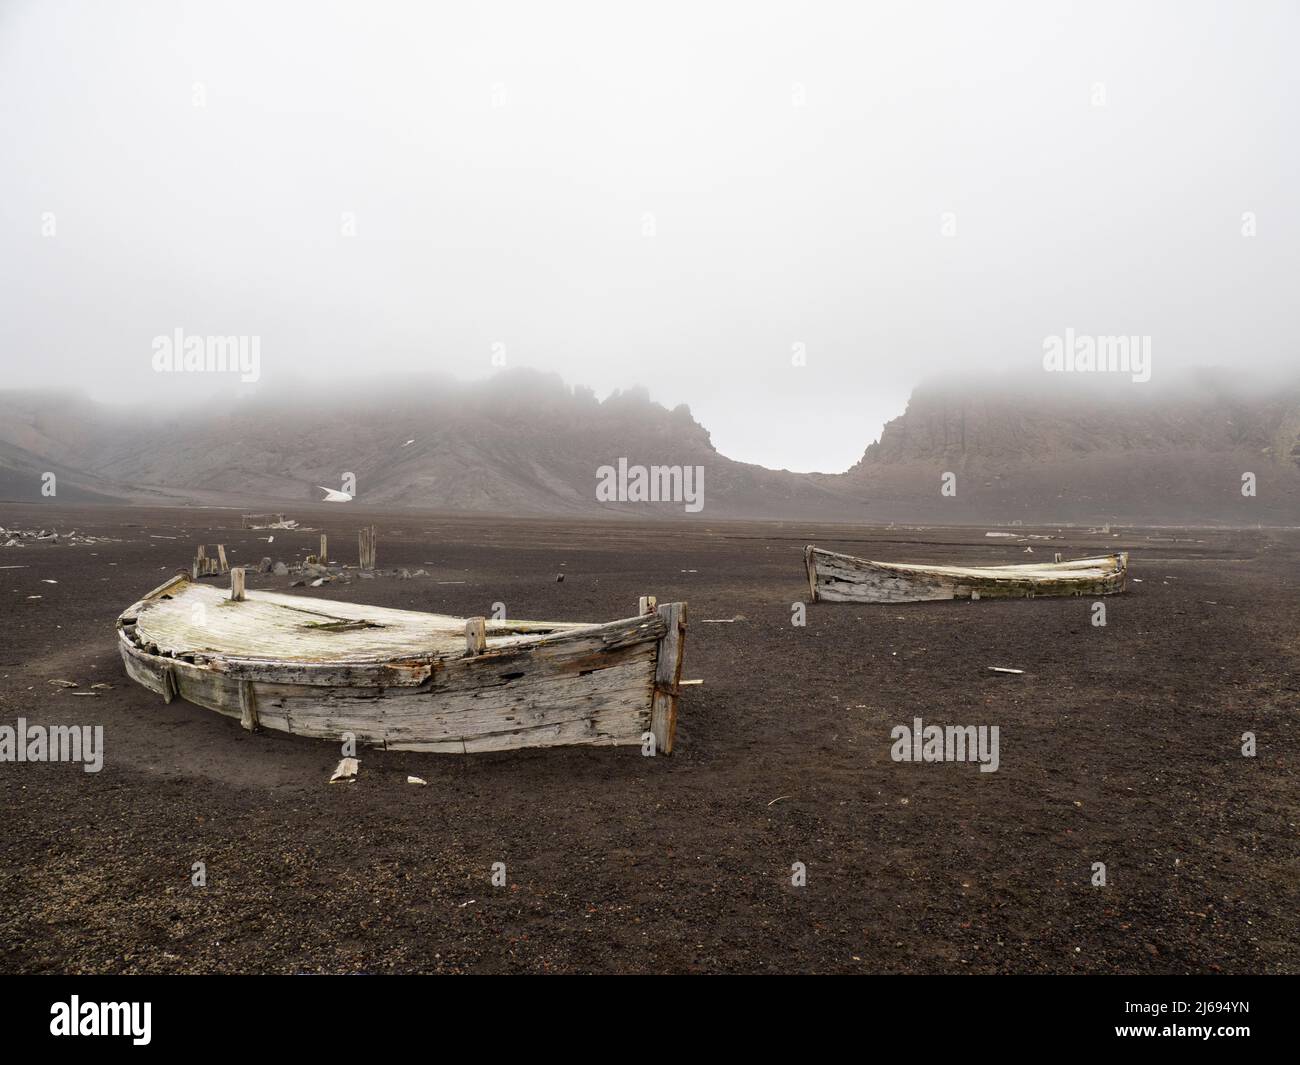 Les restes de vieux bateaux à eau à l'île de Deception, un volcan actif qui a éclaté pour la dernière fois en 1969, Antarctique, régions polaires Banque D'Images